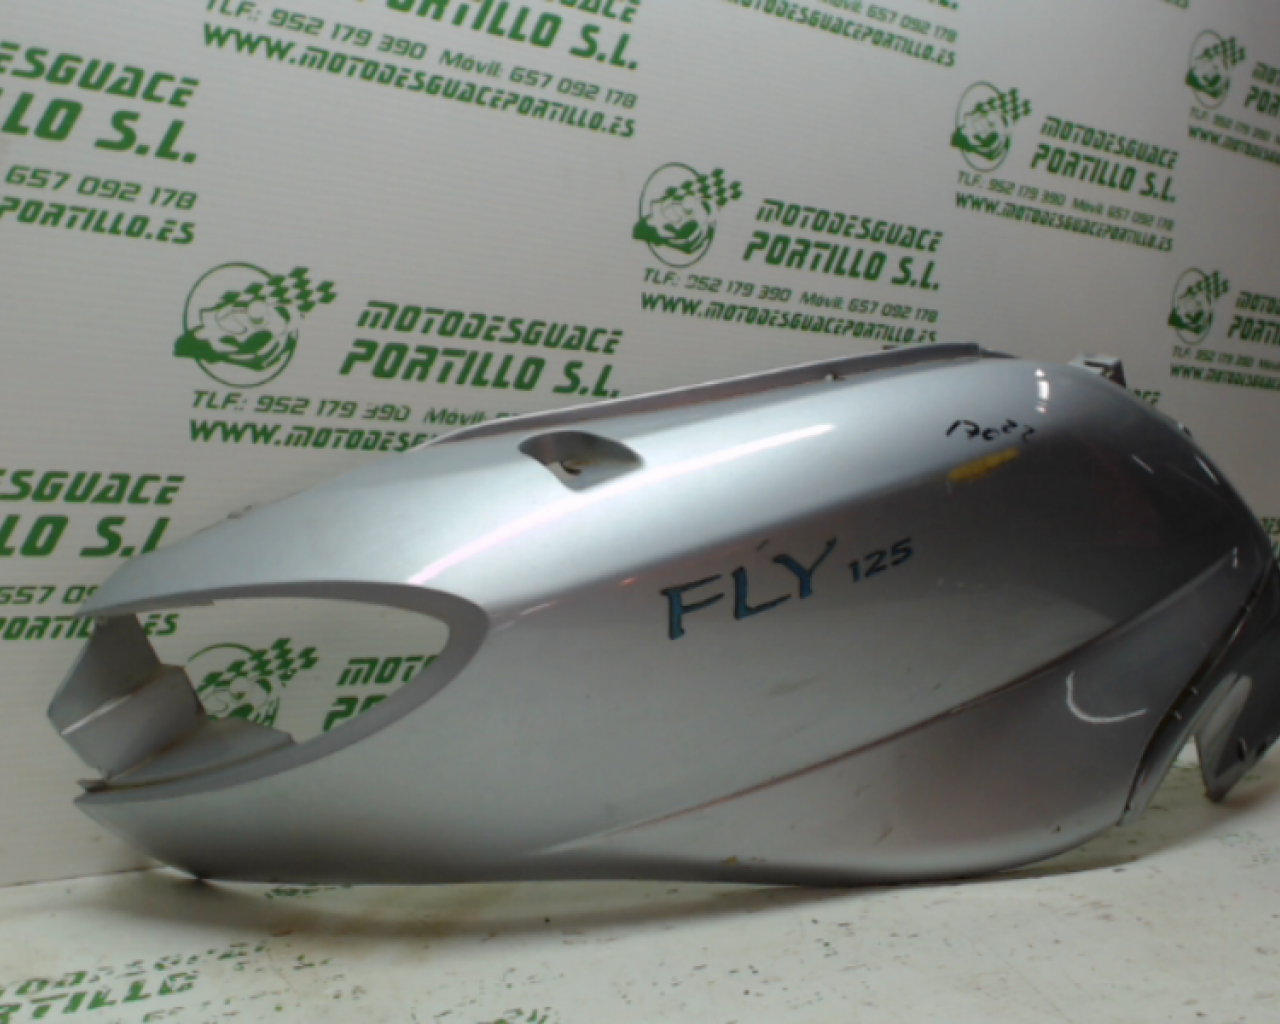 Carcasa lateral trasera derecha Piaggio FLY 125 4T (2005-2007)